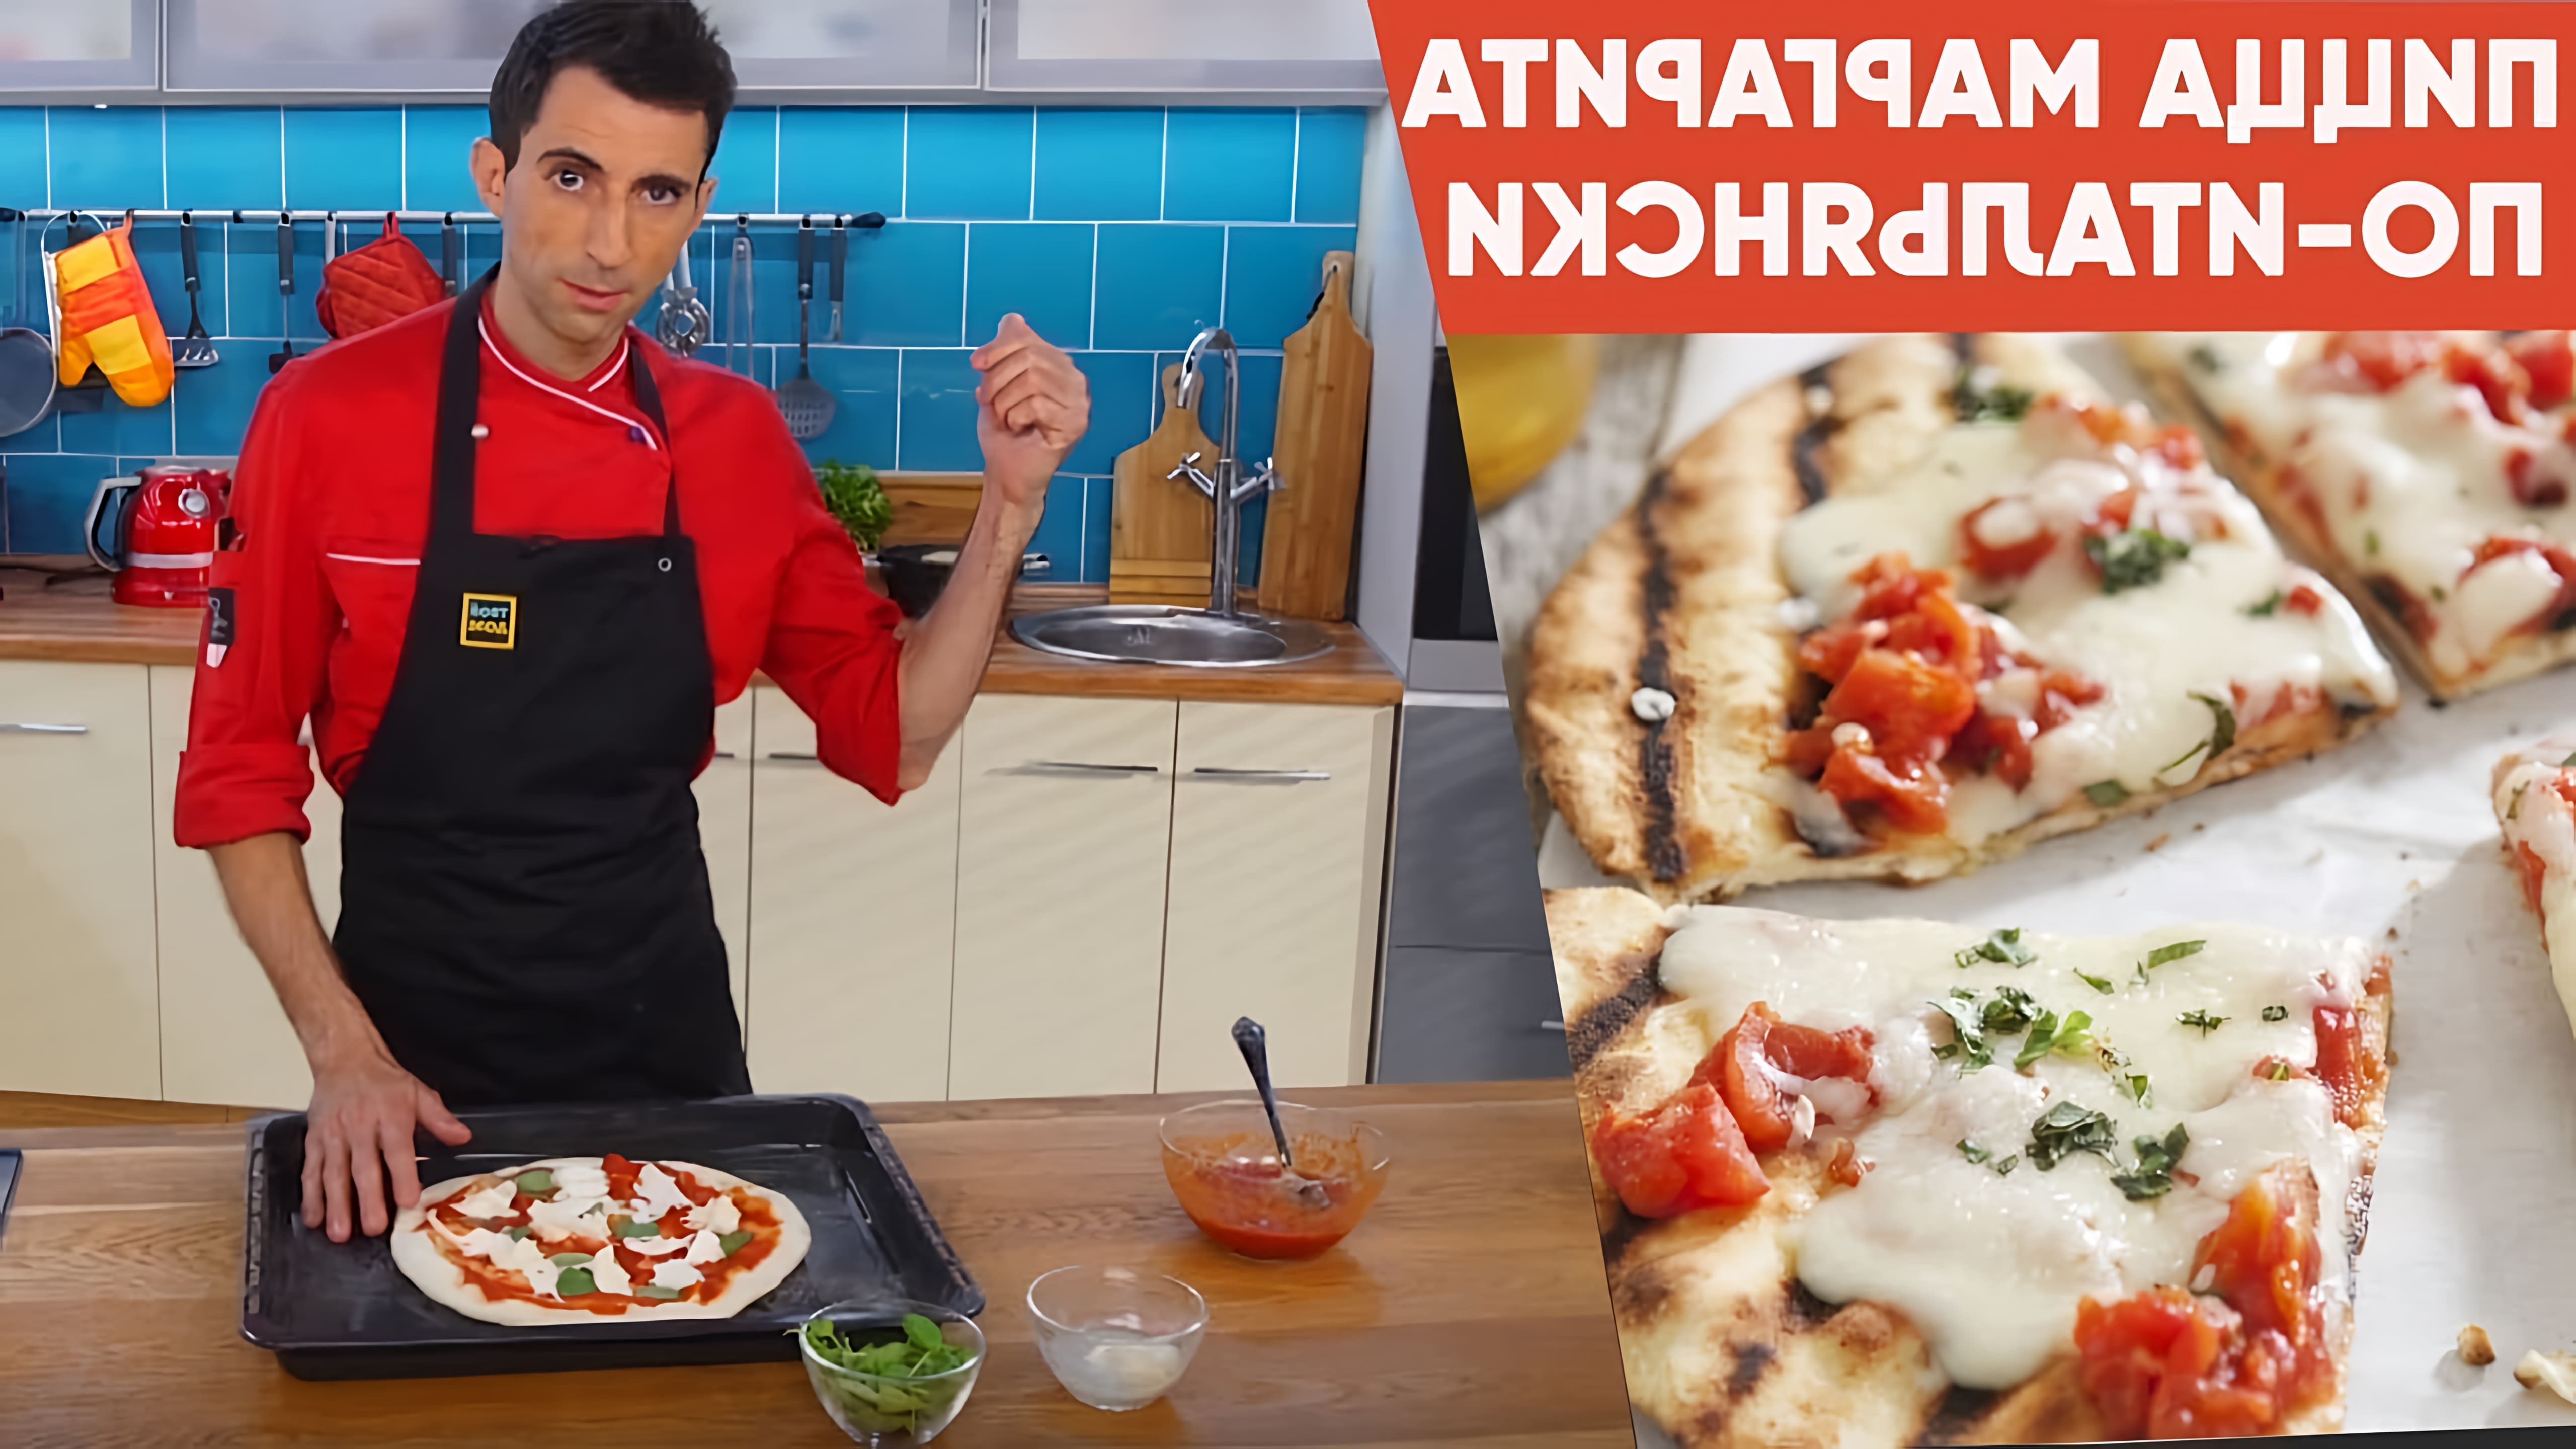 Рецепт пиццы Маргариты от шеф-повара "Супер-шеф" - это видео-ролик, который демонстрирует процесс приготовления классической итальянской пиццы